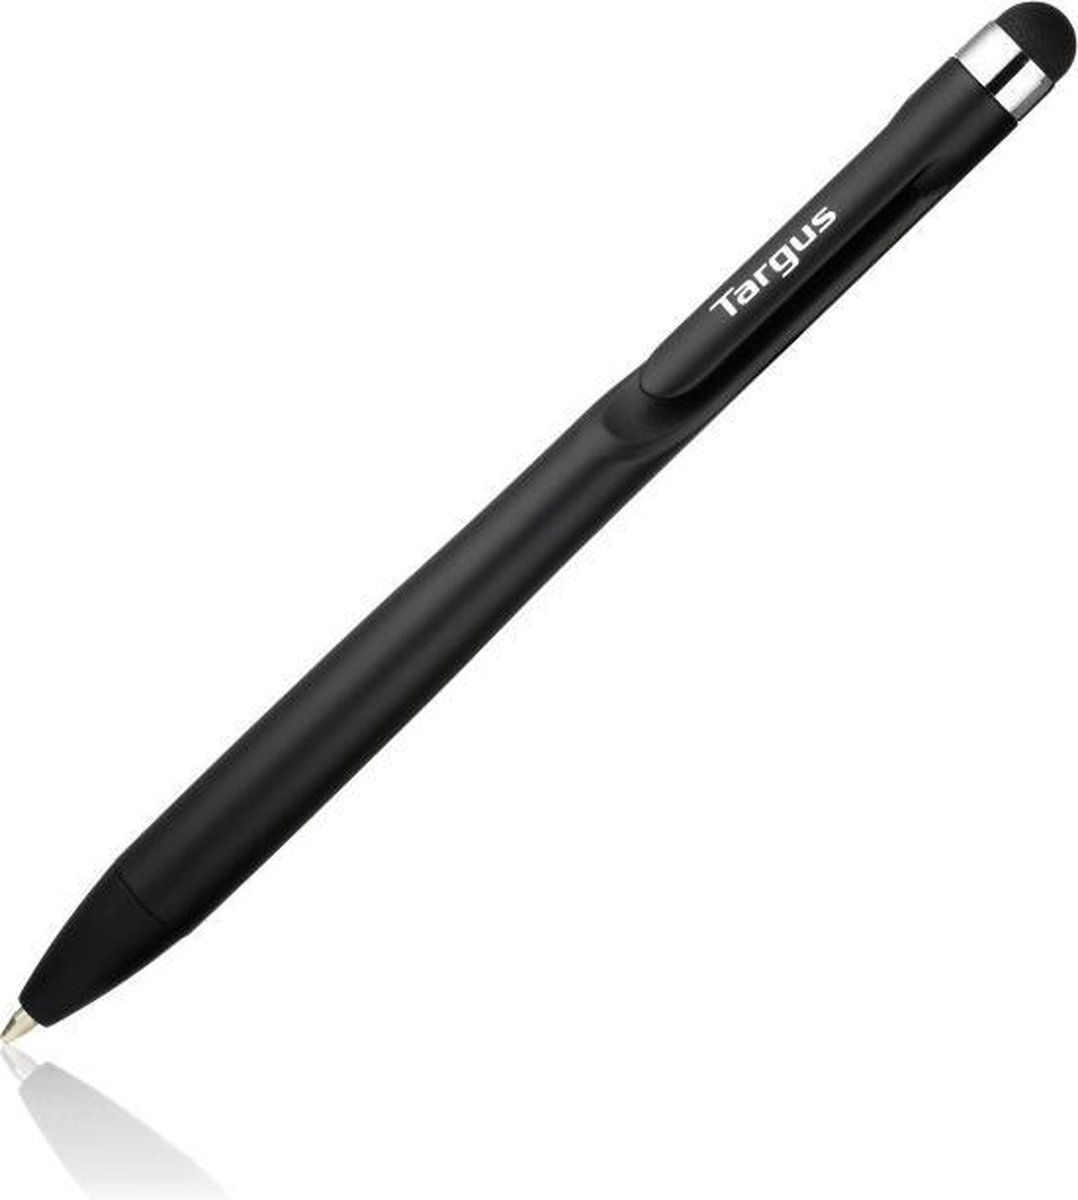 targus inotebook digital pen review